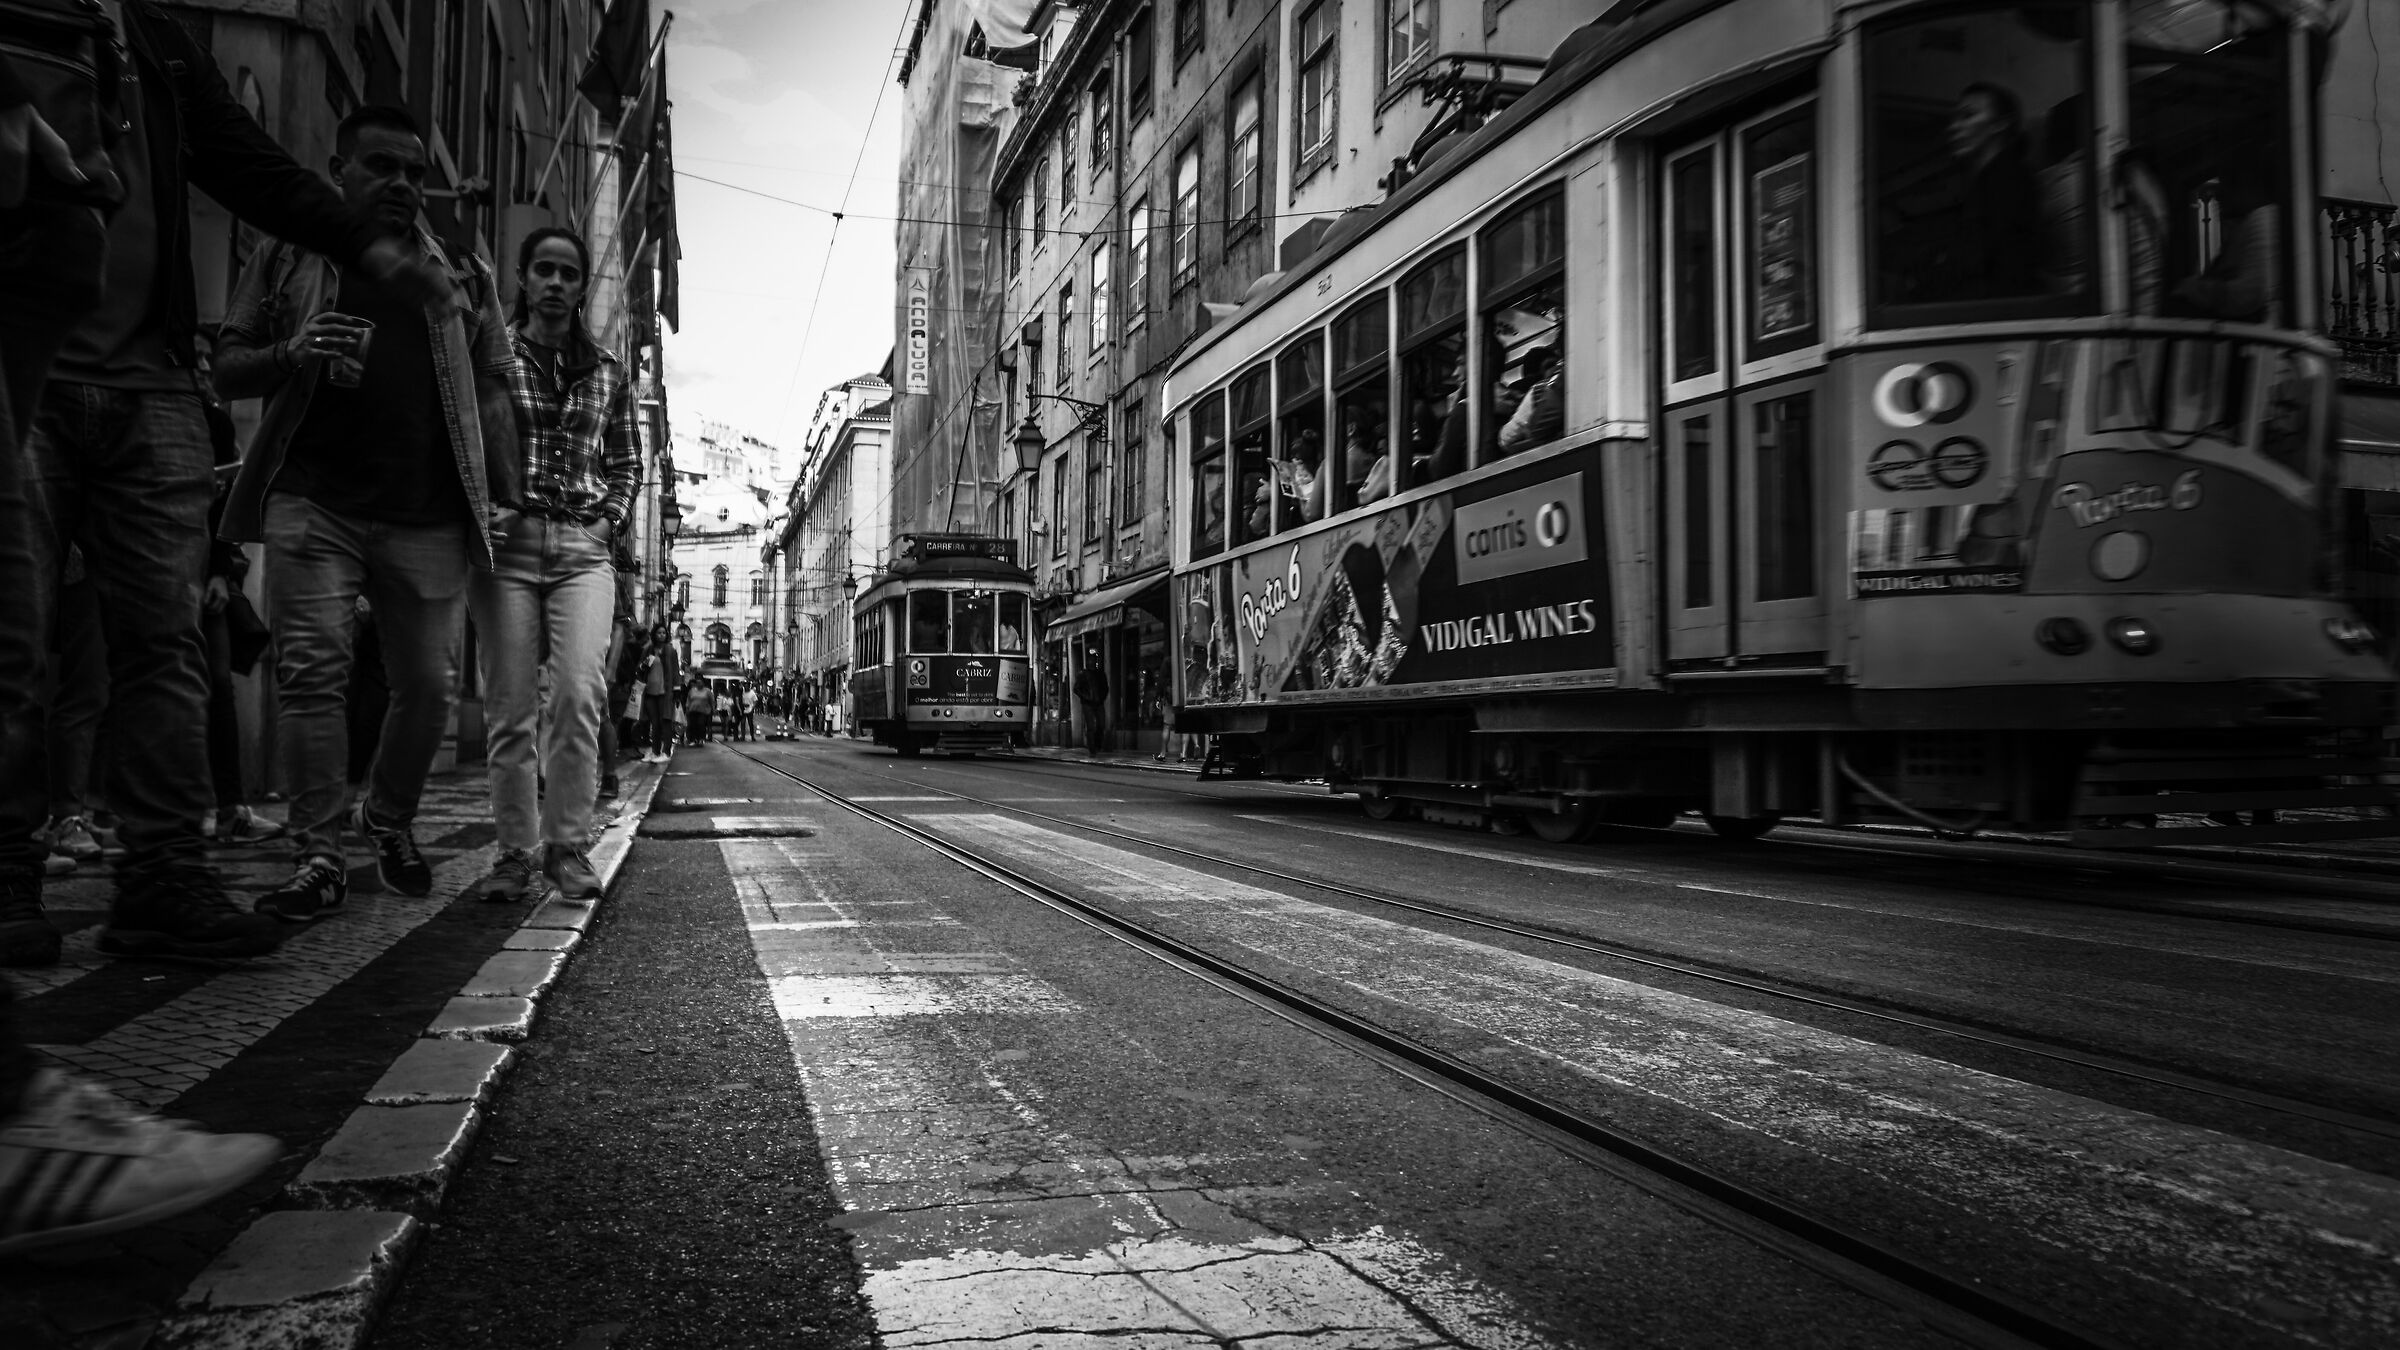 Lisbona in tram...